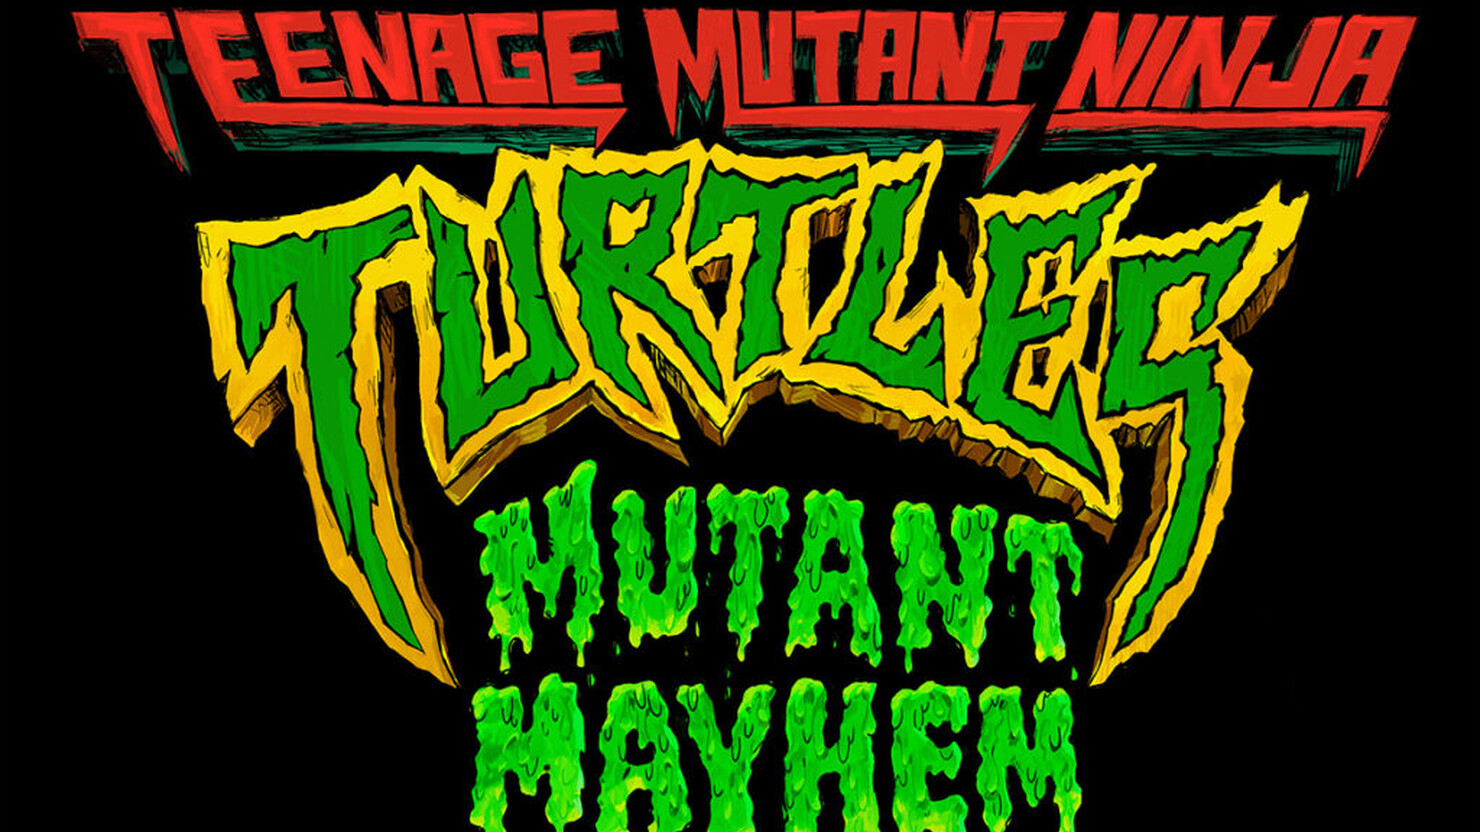 Переполох с мутантами: новый полнометражный мультфильм про Черепашек-ниндзя представил первый арт с официальным названием